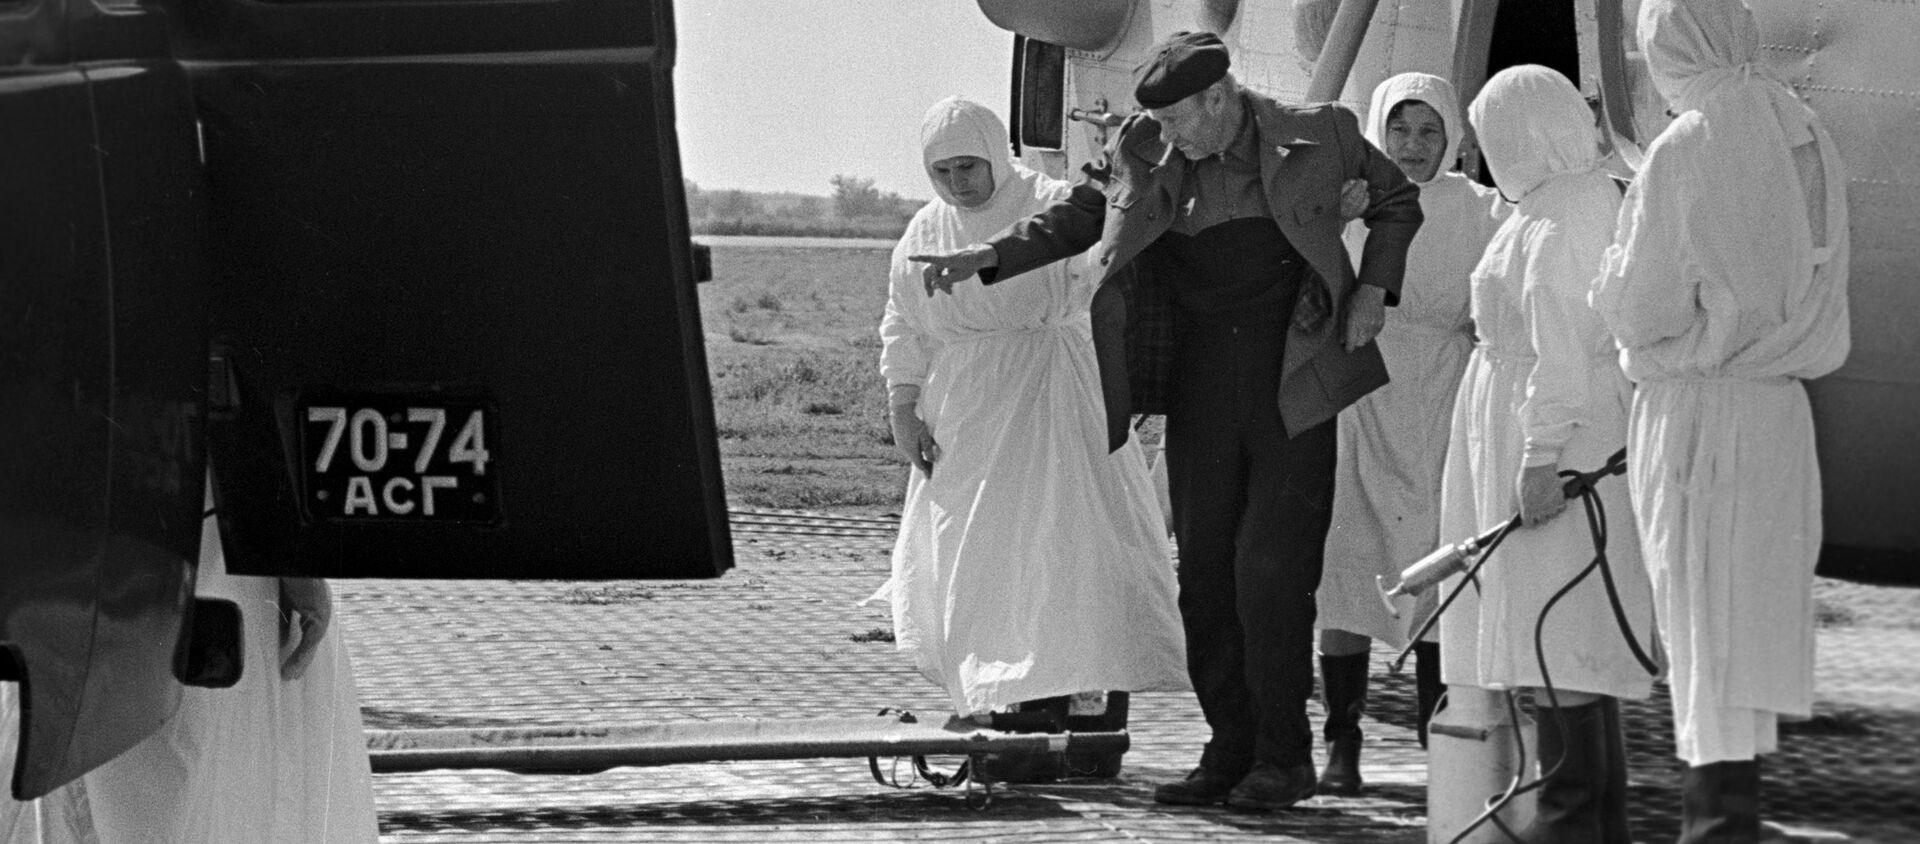 Отправка больного холерой в инфекционную больницу Астрахани, 1970 год - Sputnik Латвия, 1920, 14.04.2020